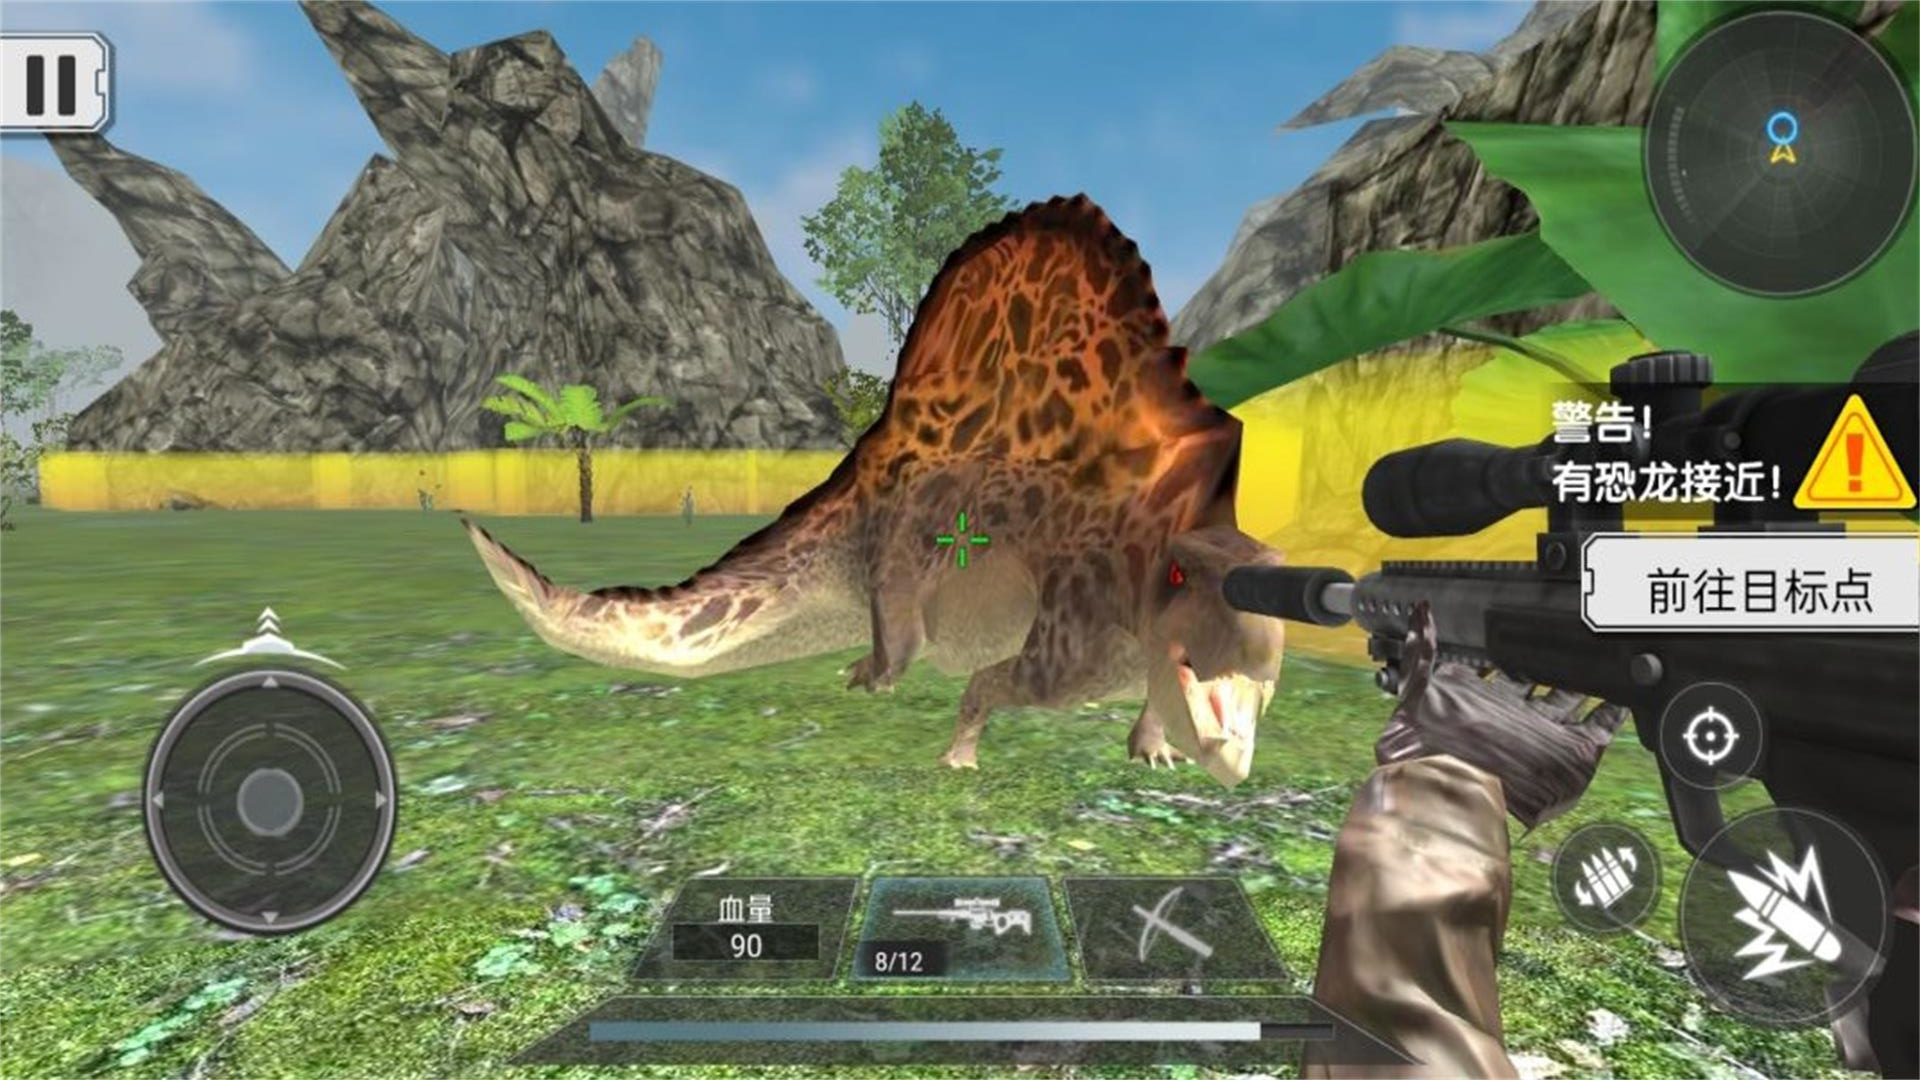 恐龙生存真实模拟手机版下载安装图片1